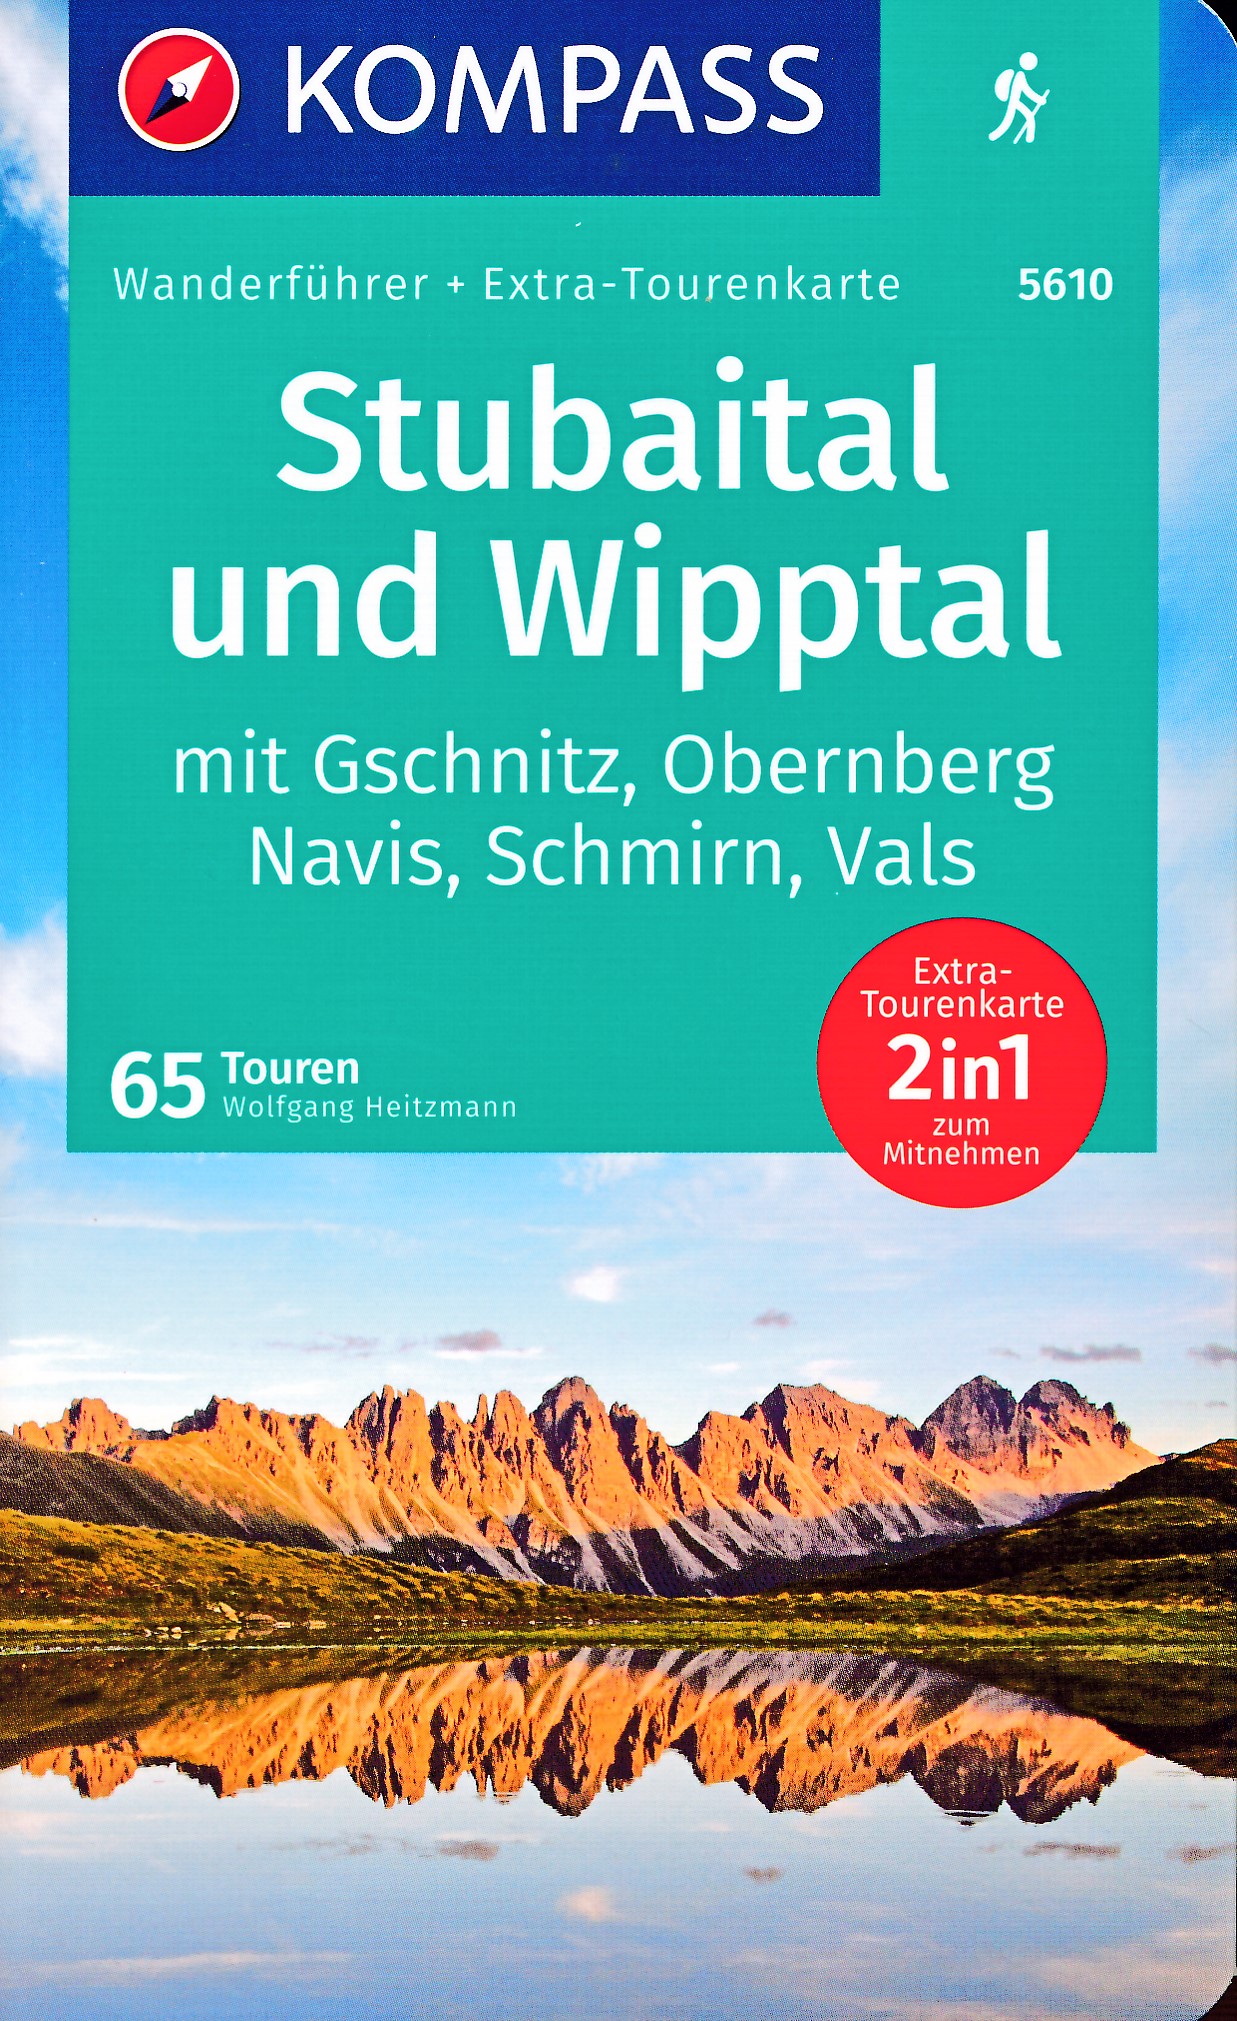 Online bestellen: Wandelgids 5610 Wanderführer Stubaital und Wipptal | Kompass